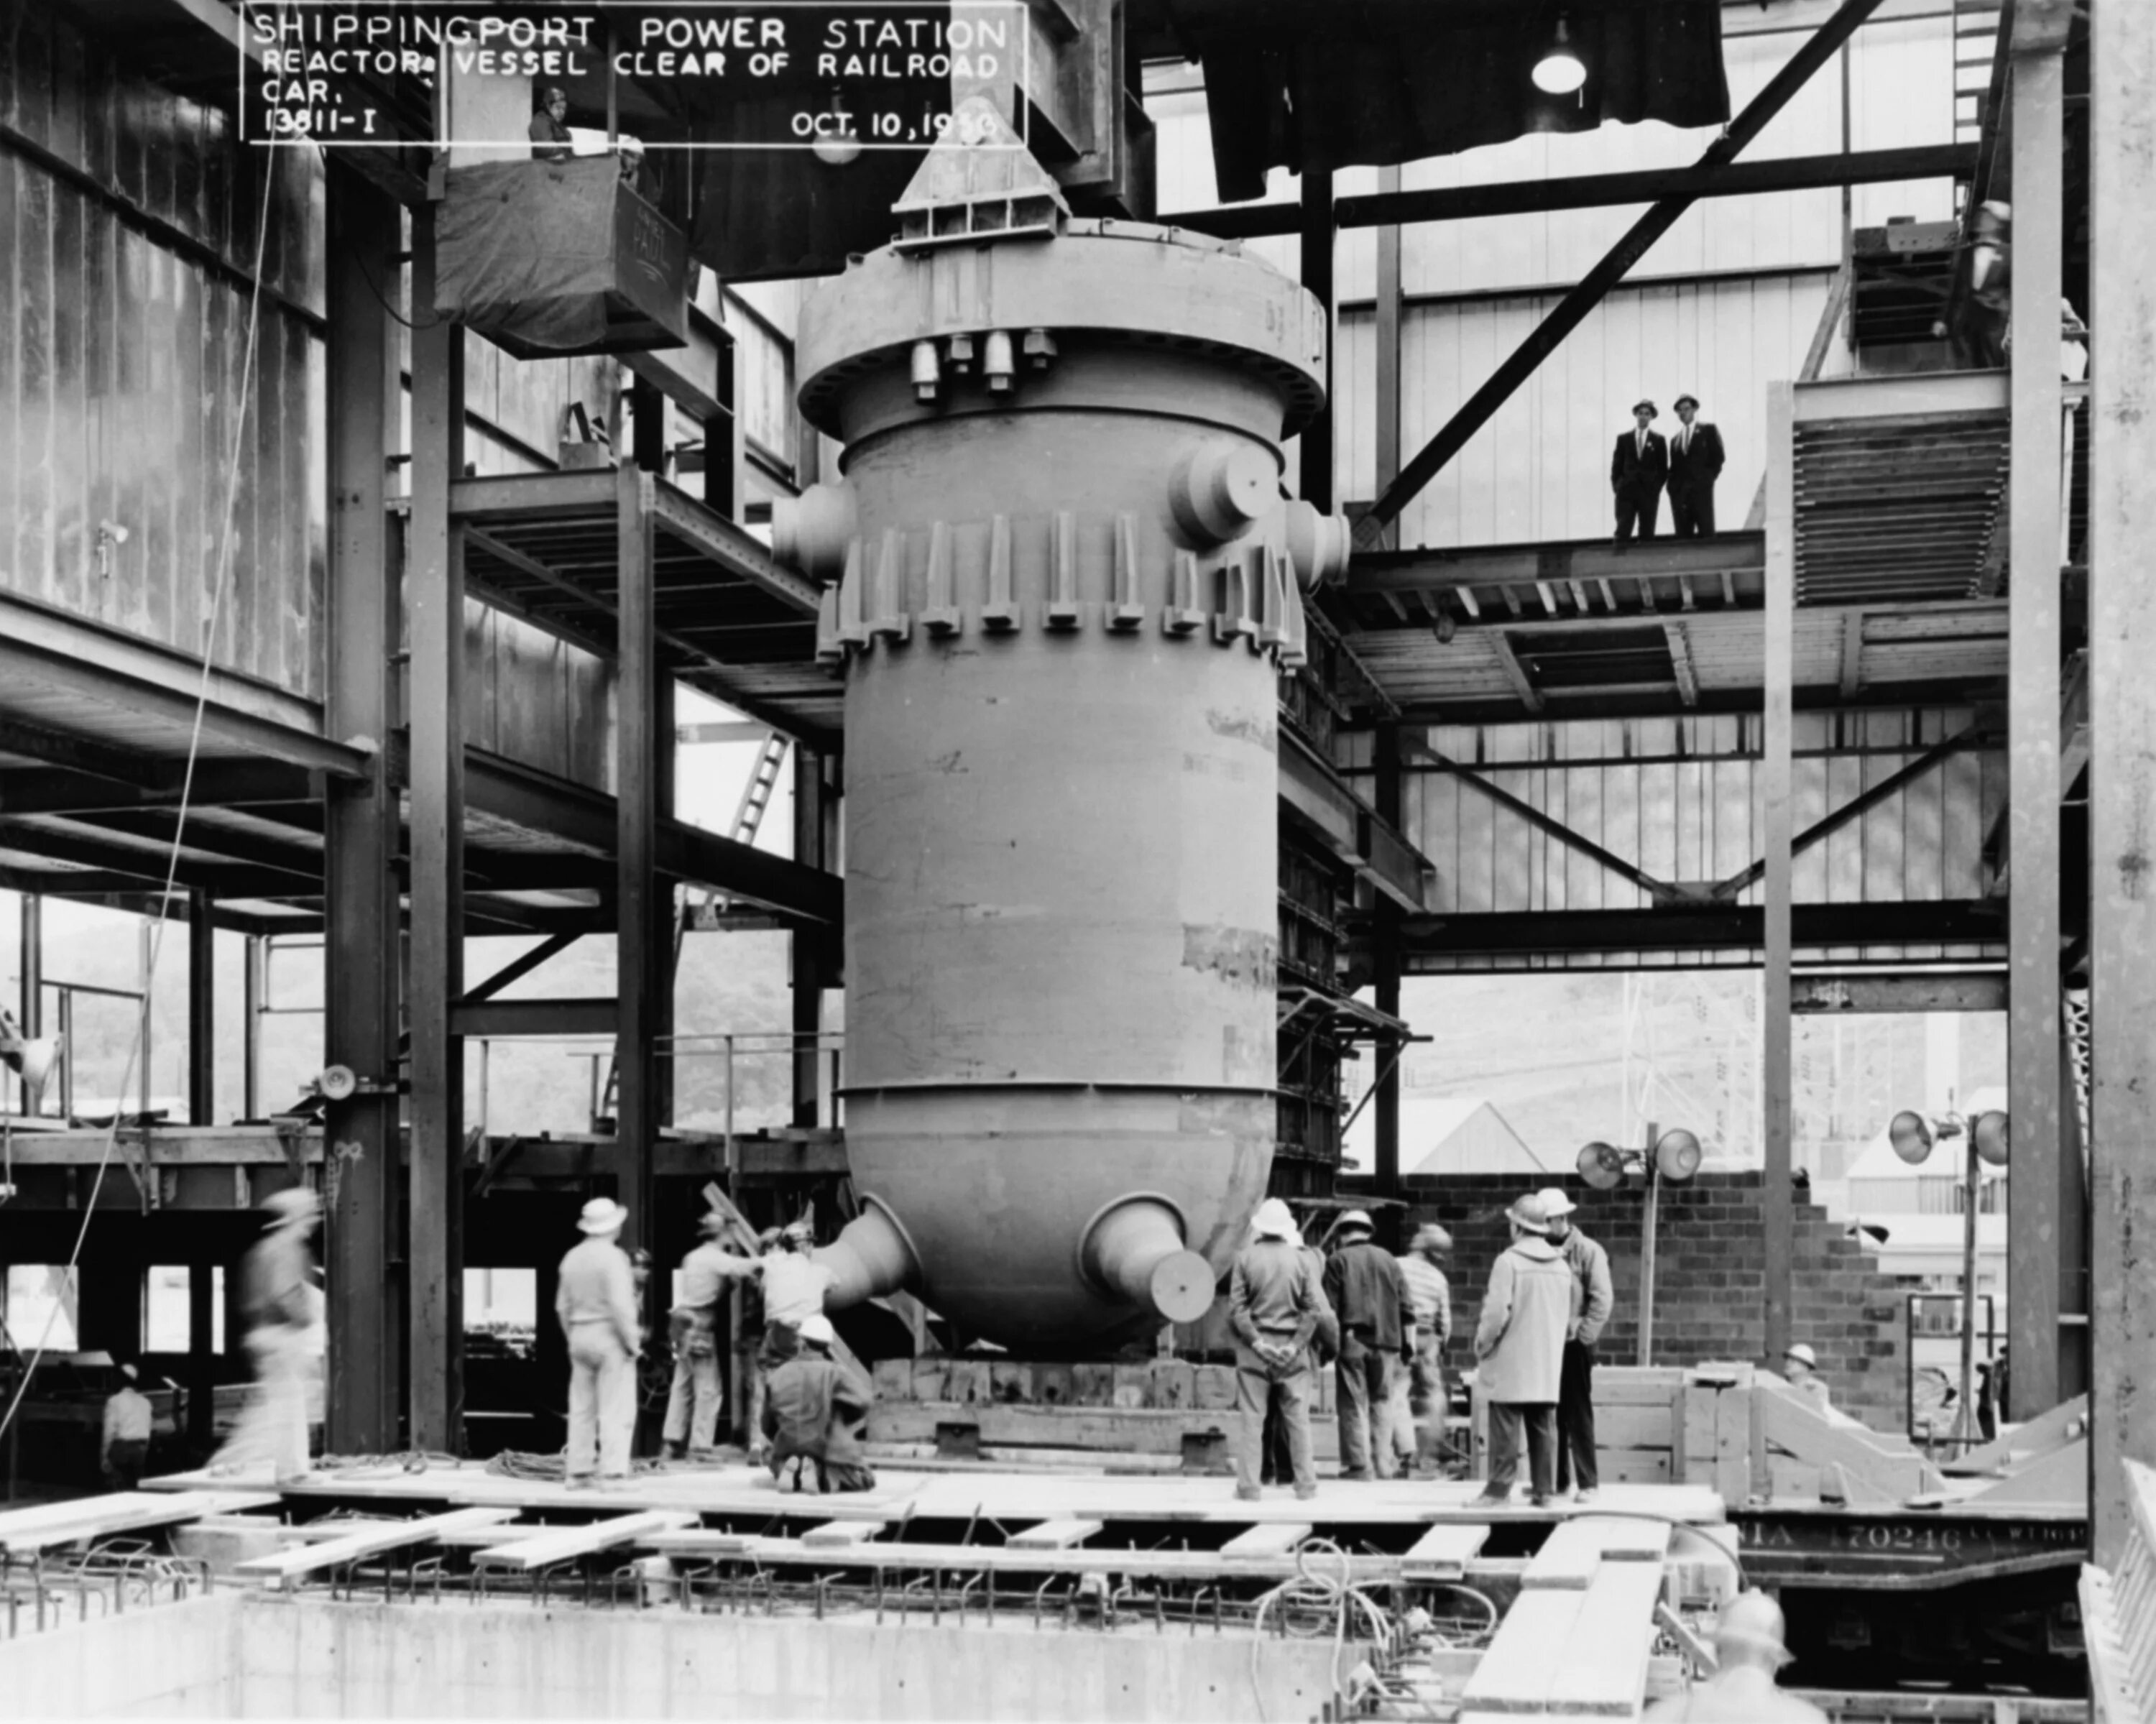 Самый первый реактор в мире. Атомная электростанция "Шиппингпорт" в США. АЭС Шиппингпорт в США 1957. Первый атомный реактор в США. Первый ядерный реактор Энрико ферми.